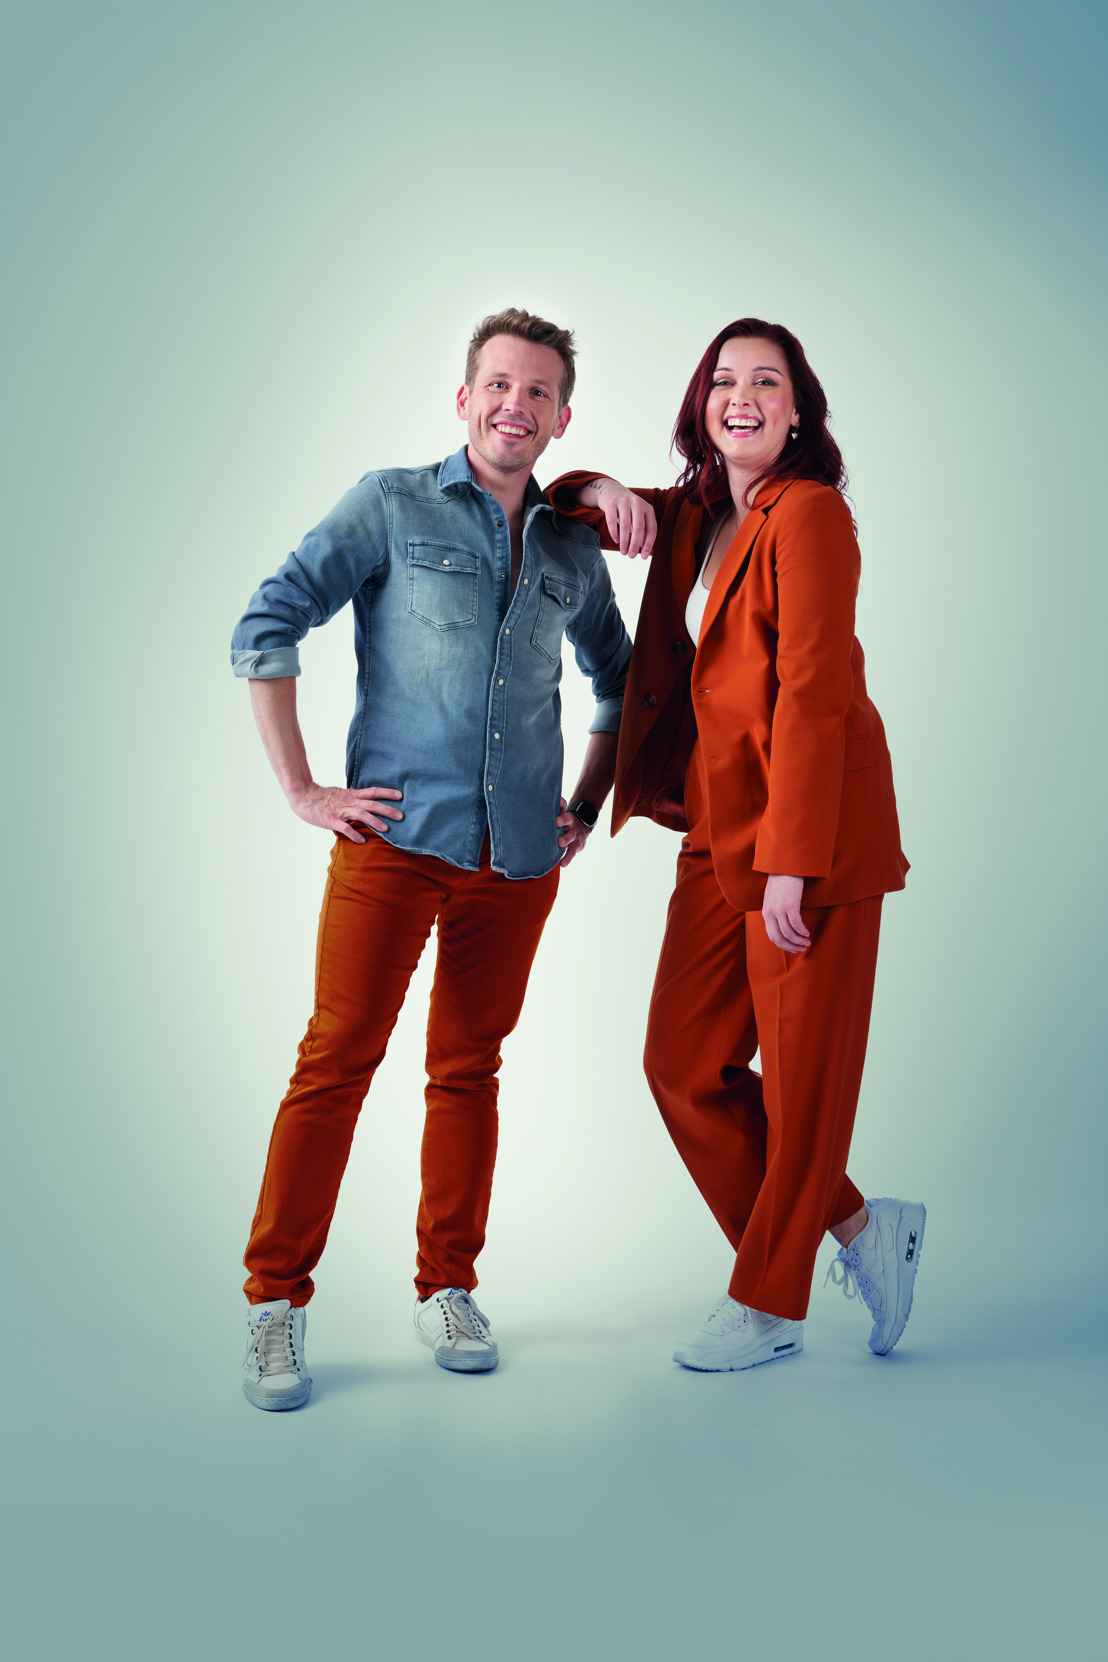 Het gloednieuwe realityprogramma "Da’s dikke liefde" met Lotte Vanwezemael en Servaas Bingé - Binnenkort op Play4